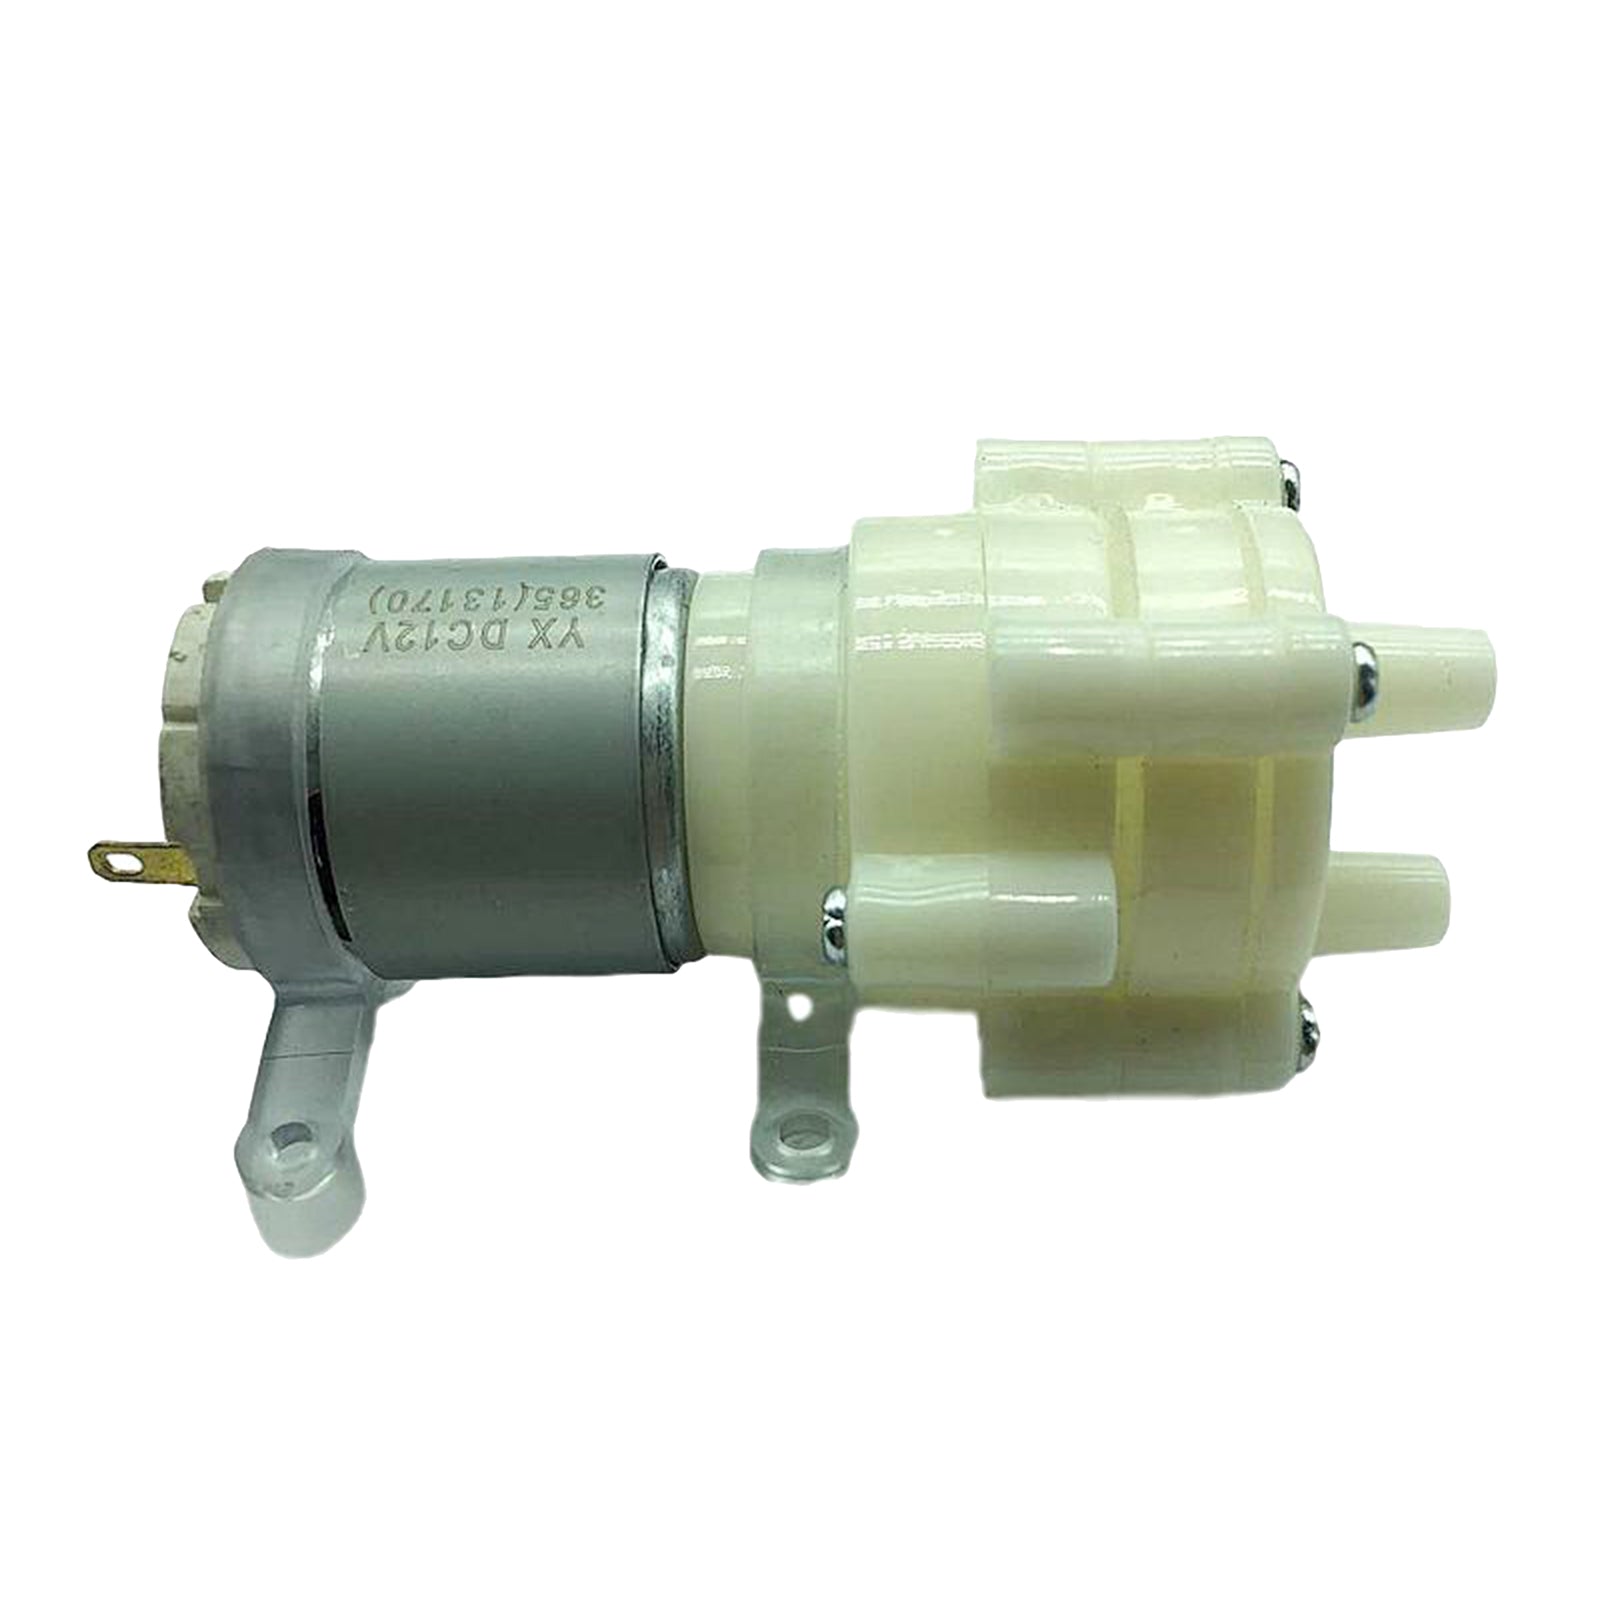 DC12V 0.5-0.7A Aquarium Pump Fountain Marine Tank Motor Diaphragm Water Pump